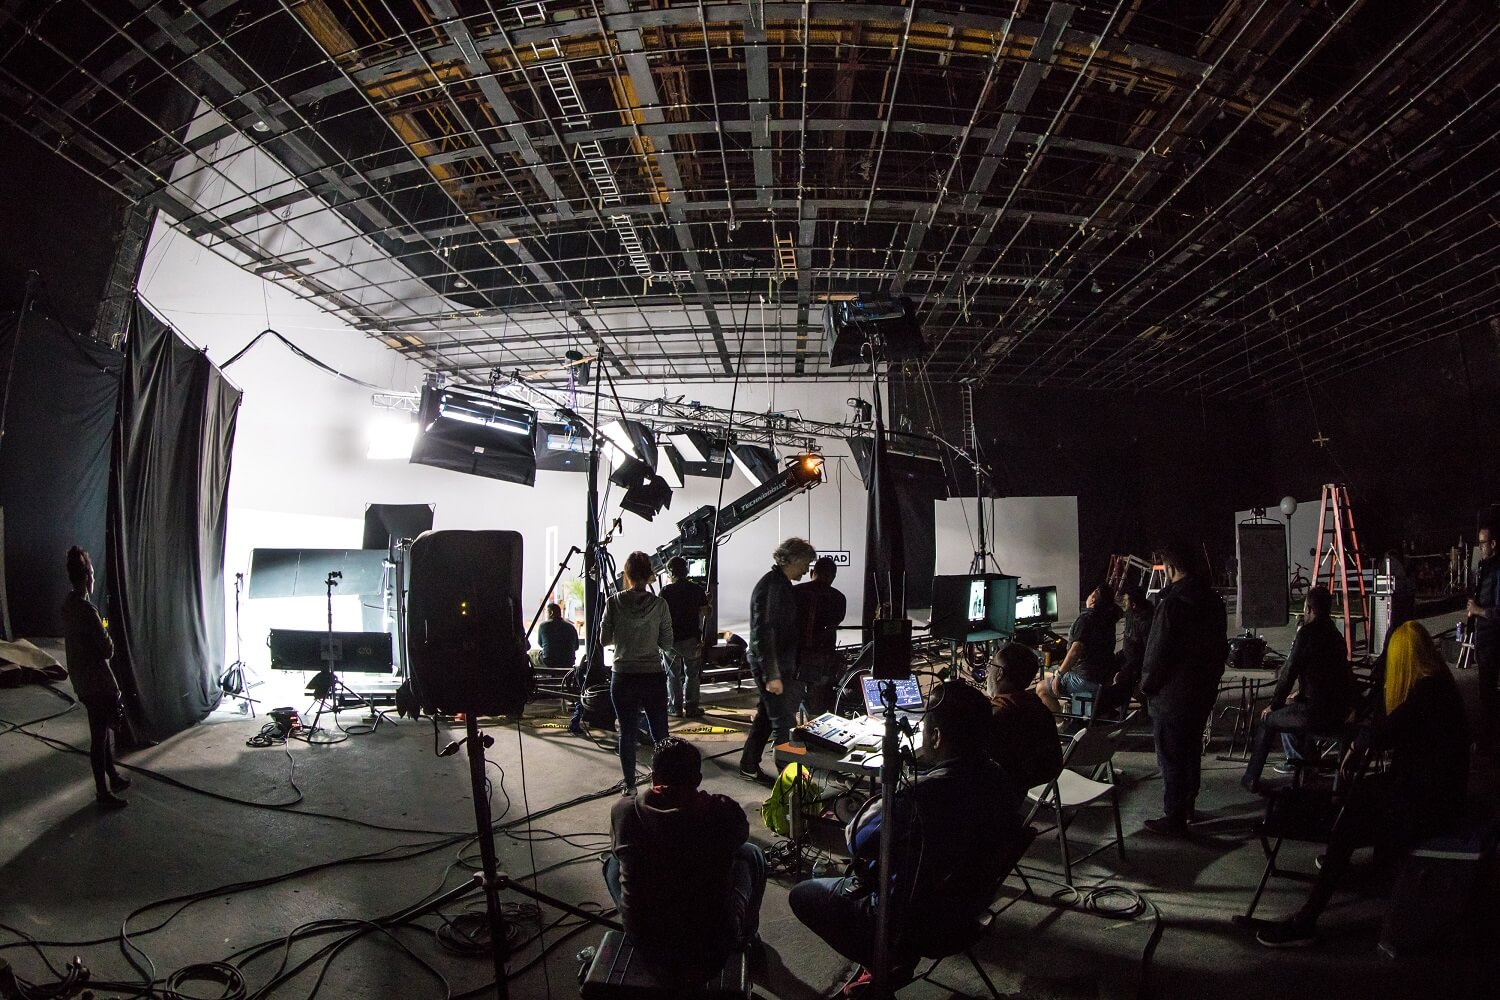 Verschiedene Personen aus einer Filmcrew arbeiten an Filmset, an dem bereits verschiedene Kameras und Lichtboxen aufgebaut wurden.